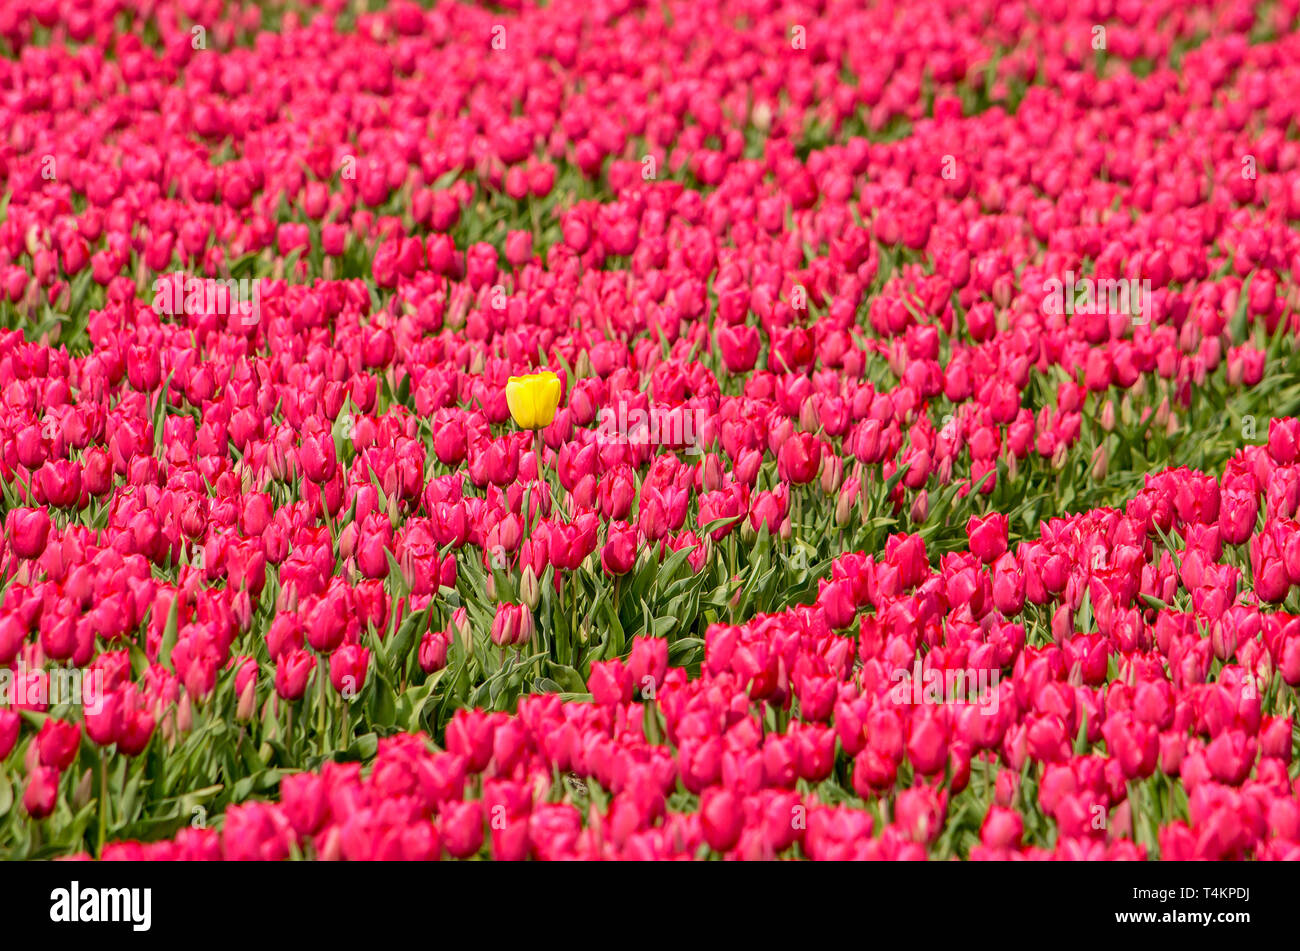 Yellow outsider tulip in a field of reddish purple tulips in a field near Noordwijkerhout, The Netherlands Stock Photo